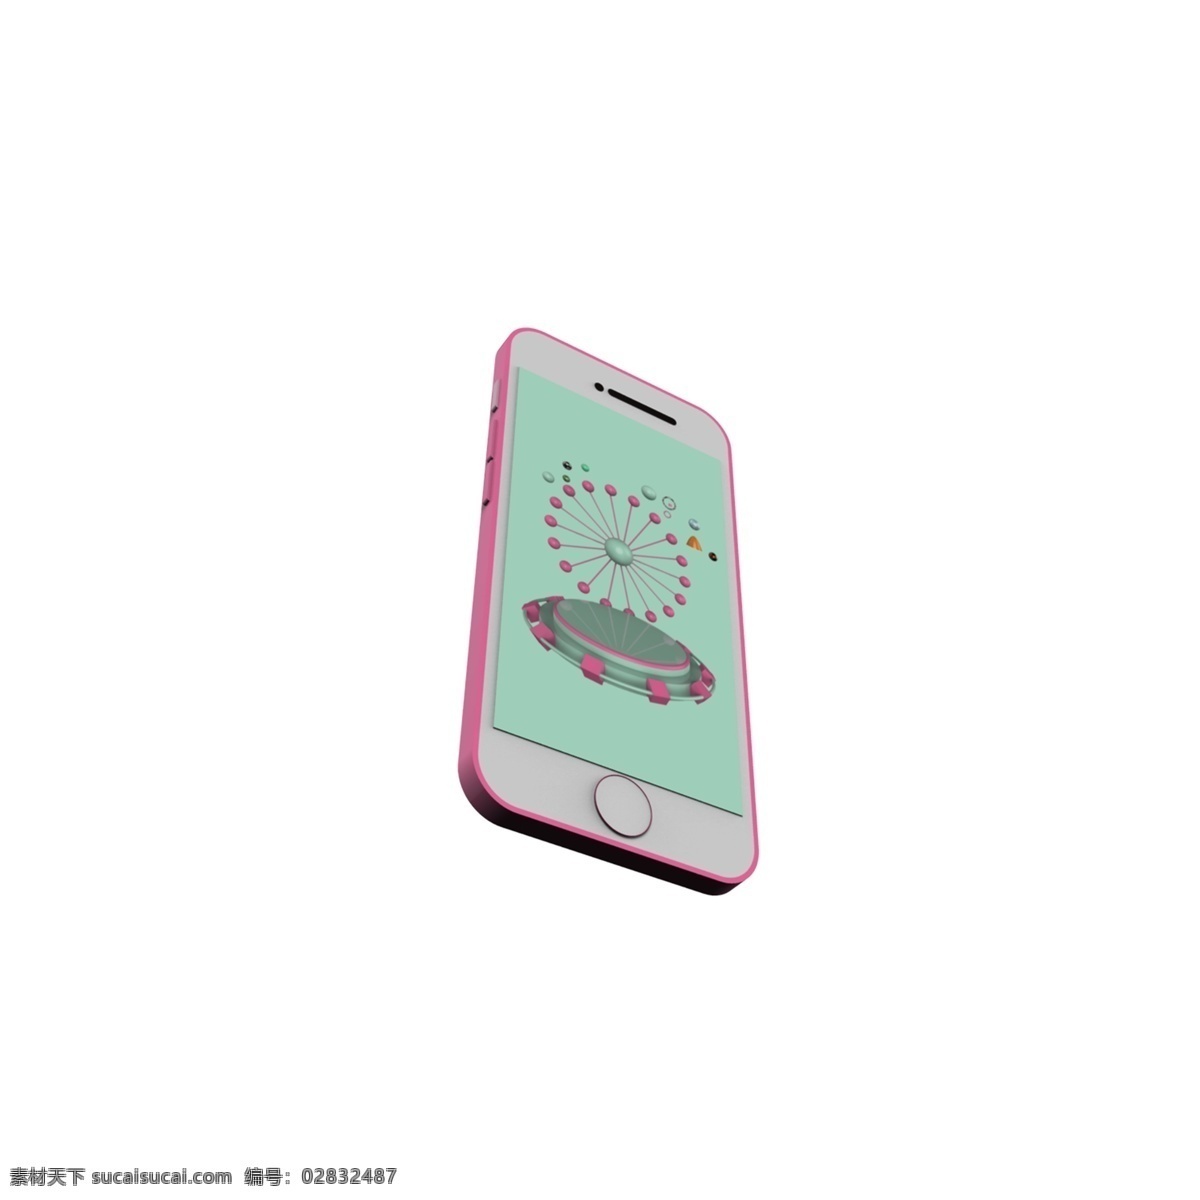 粉红色 手机 免 抠 图案 电话 手机侧面 手机模型 手绘手机模型 手绘 模 手机屏保 粉色手机 少女心